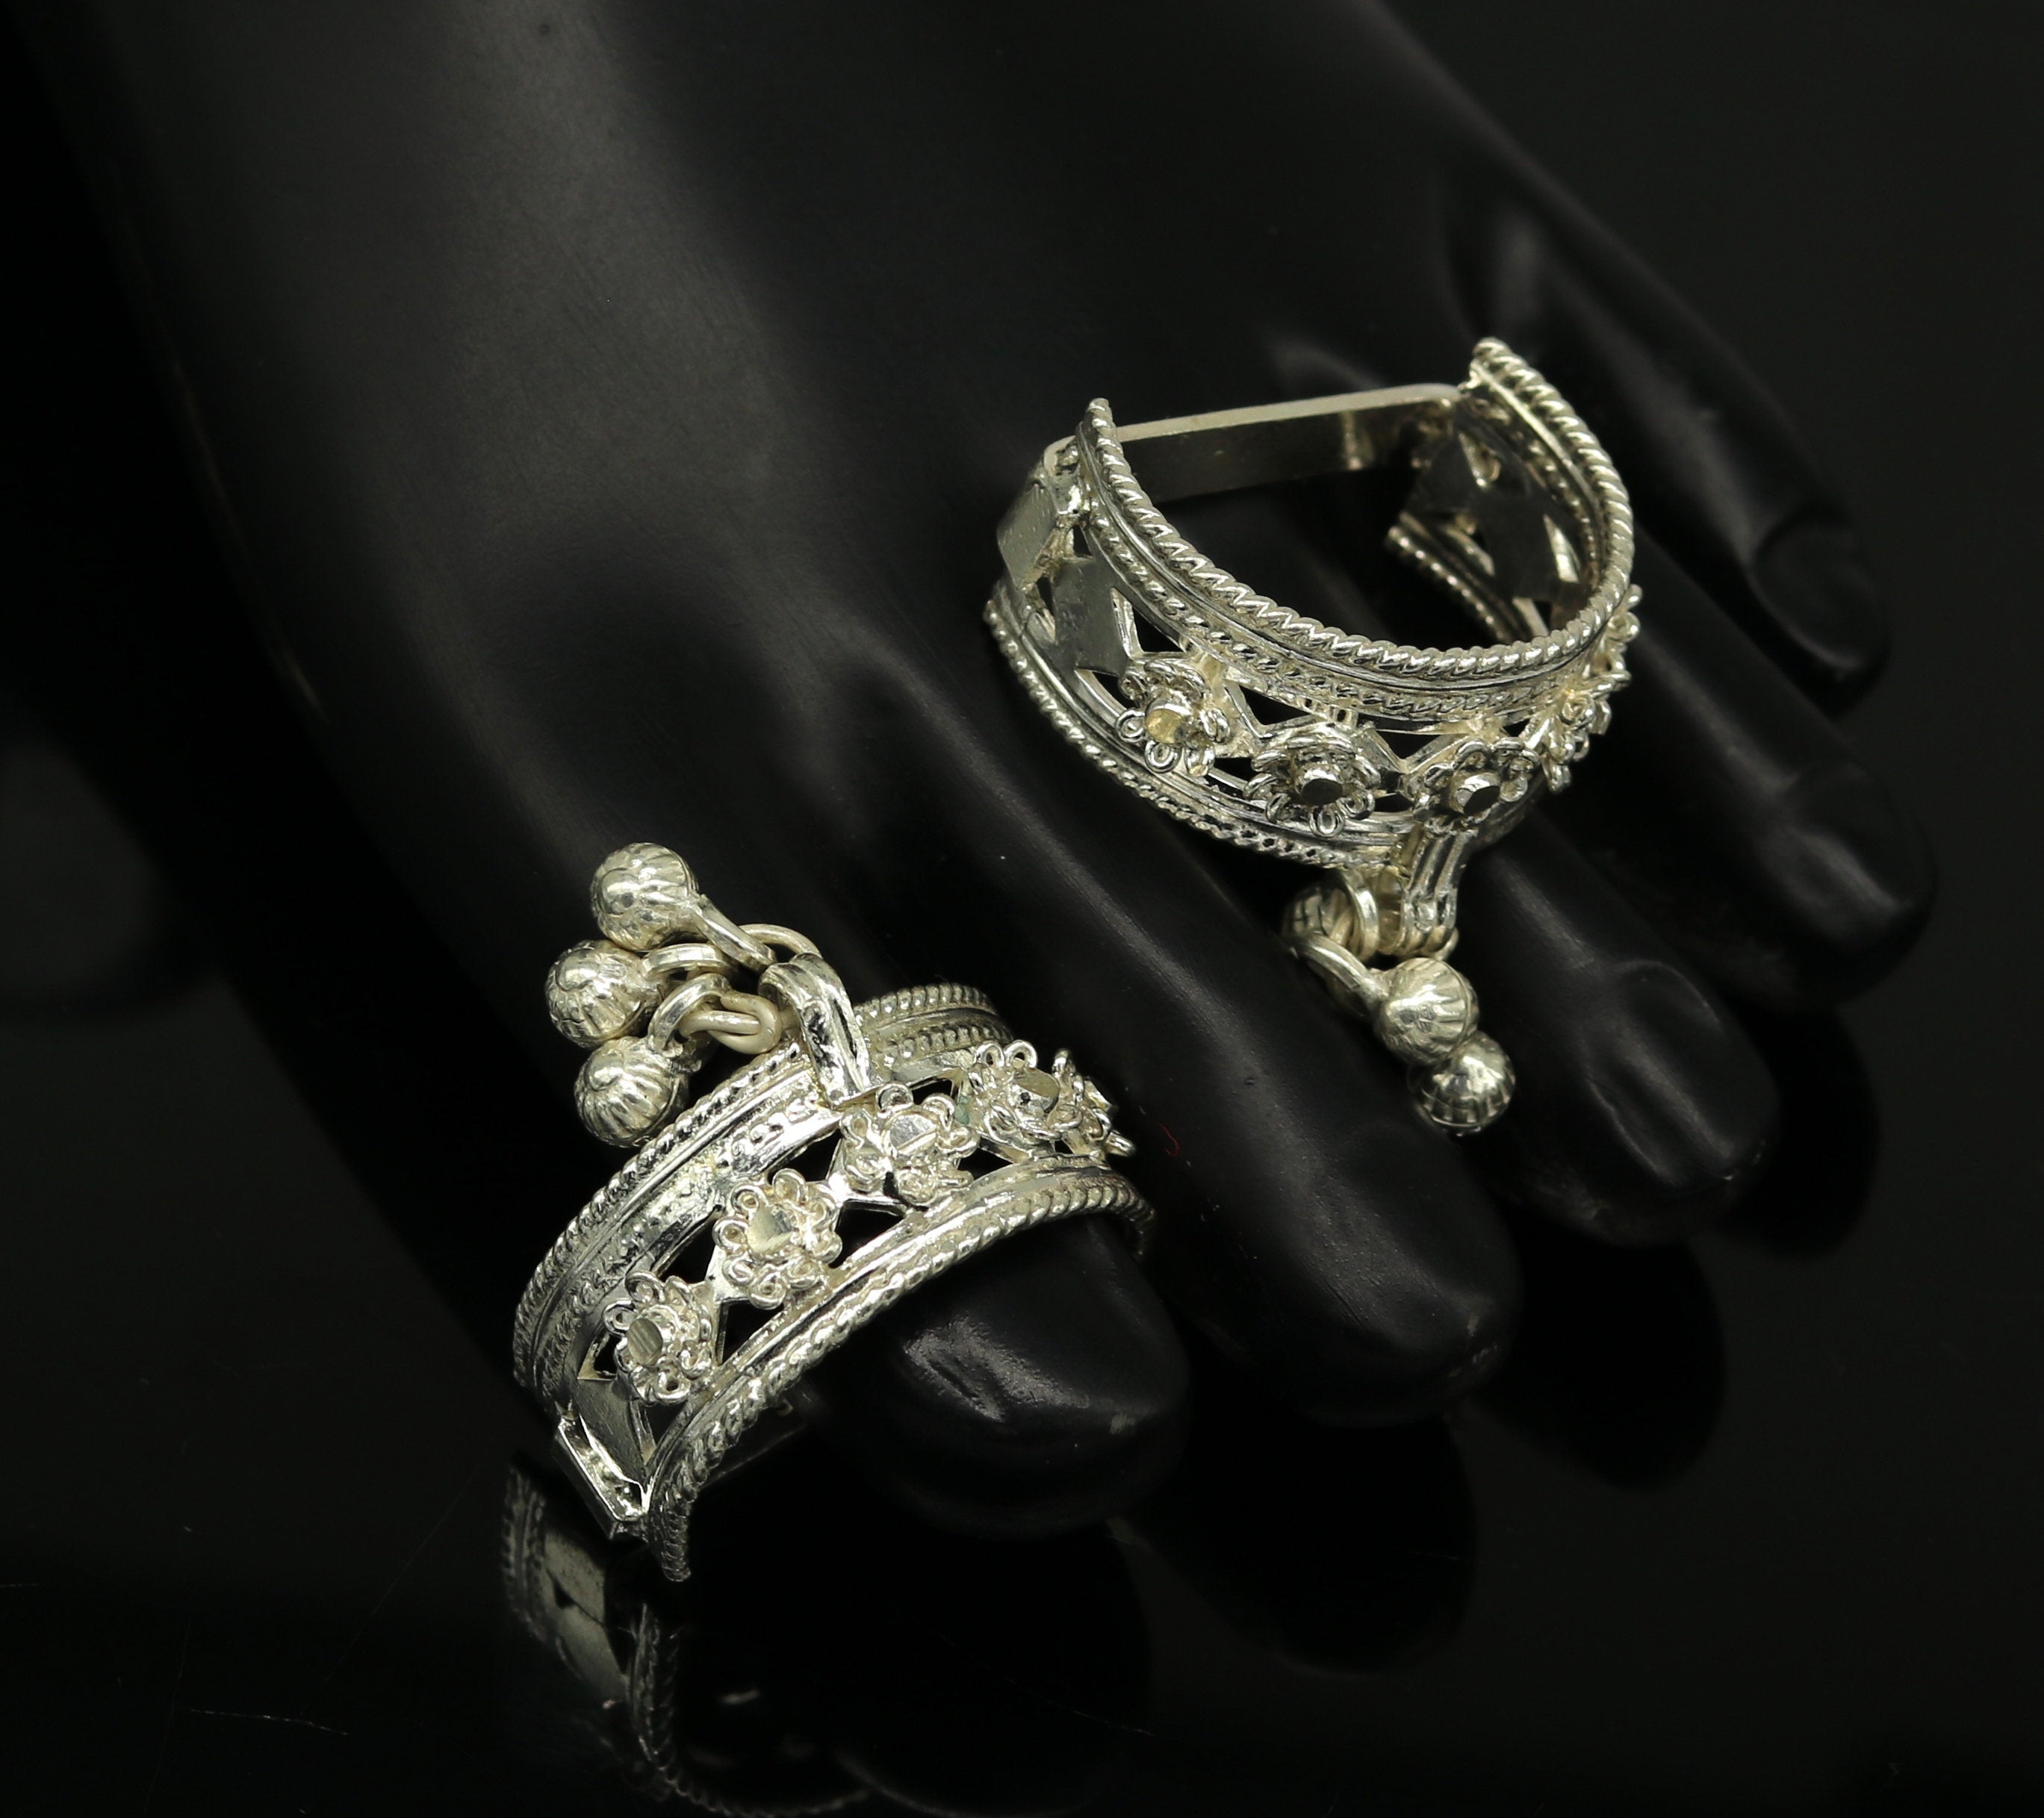 Juhi silver toe rings by Moha